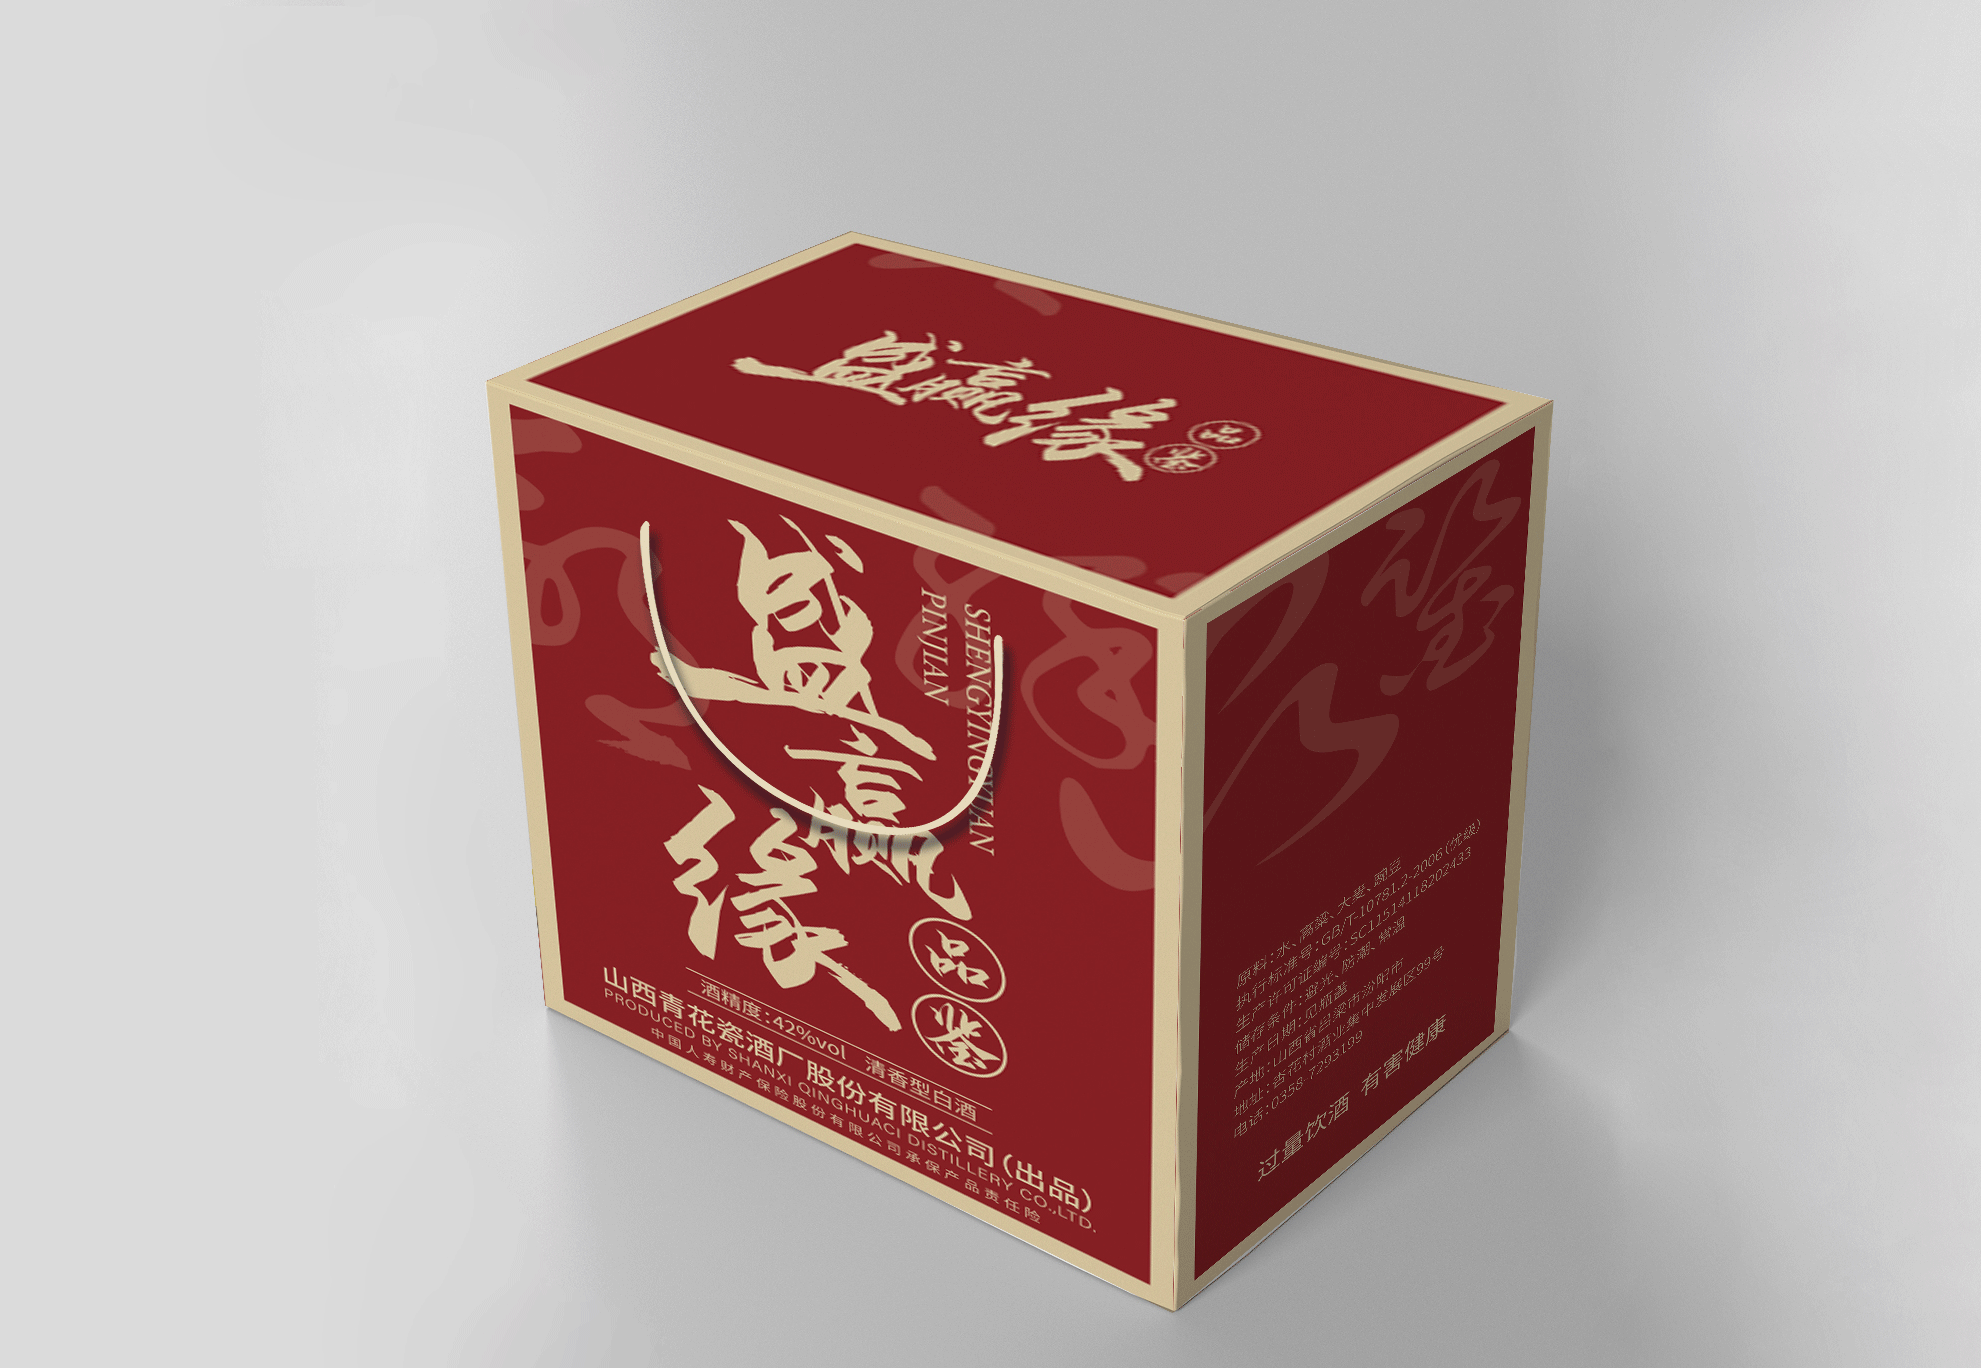 知名海南礼盒包装设计公司作品TOP3名单发布 